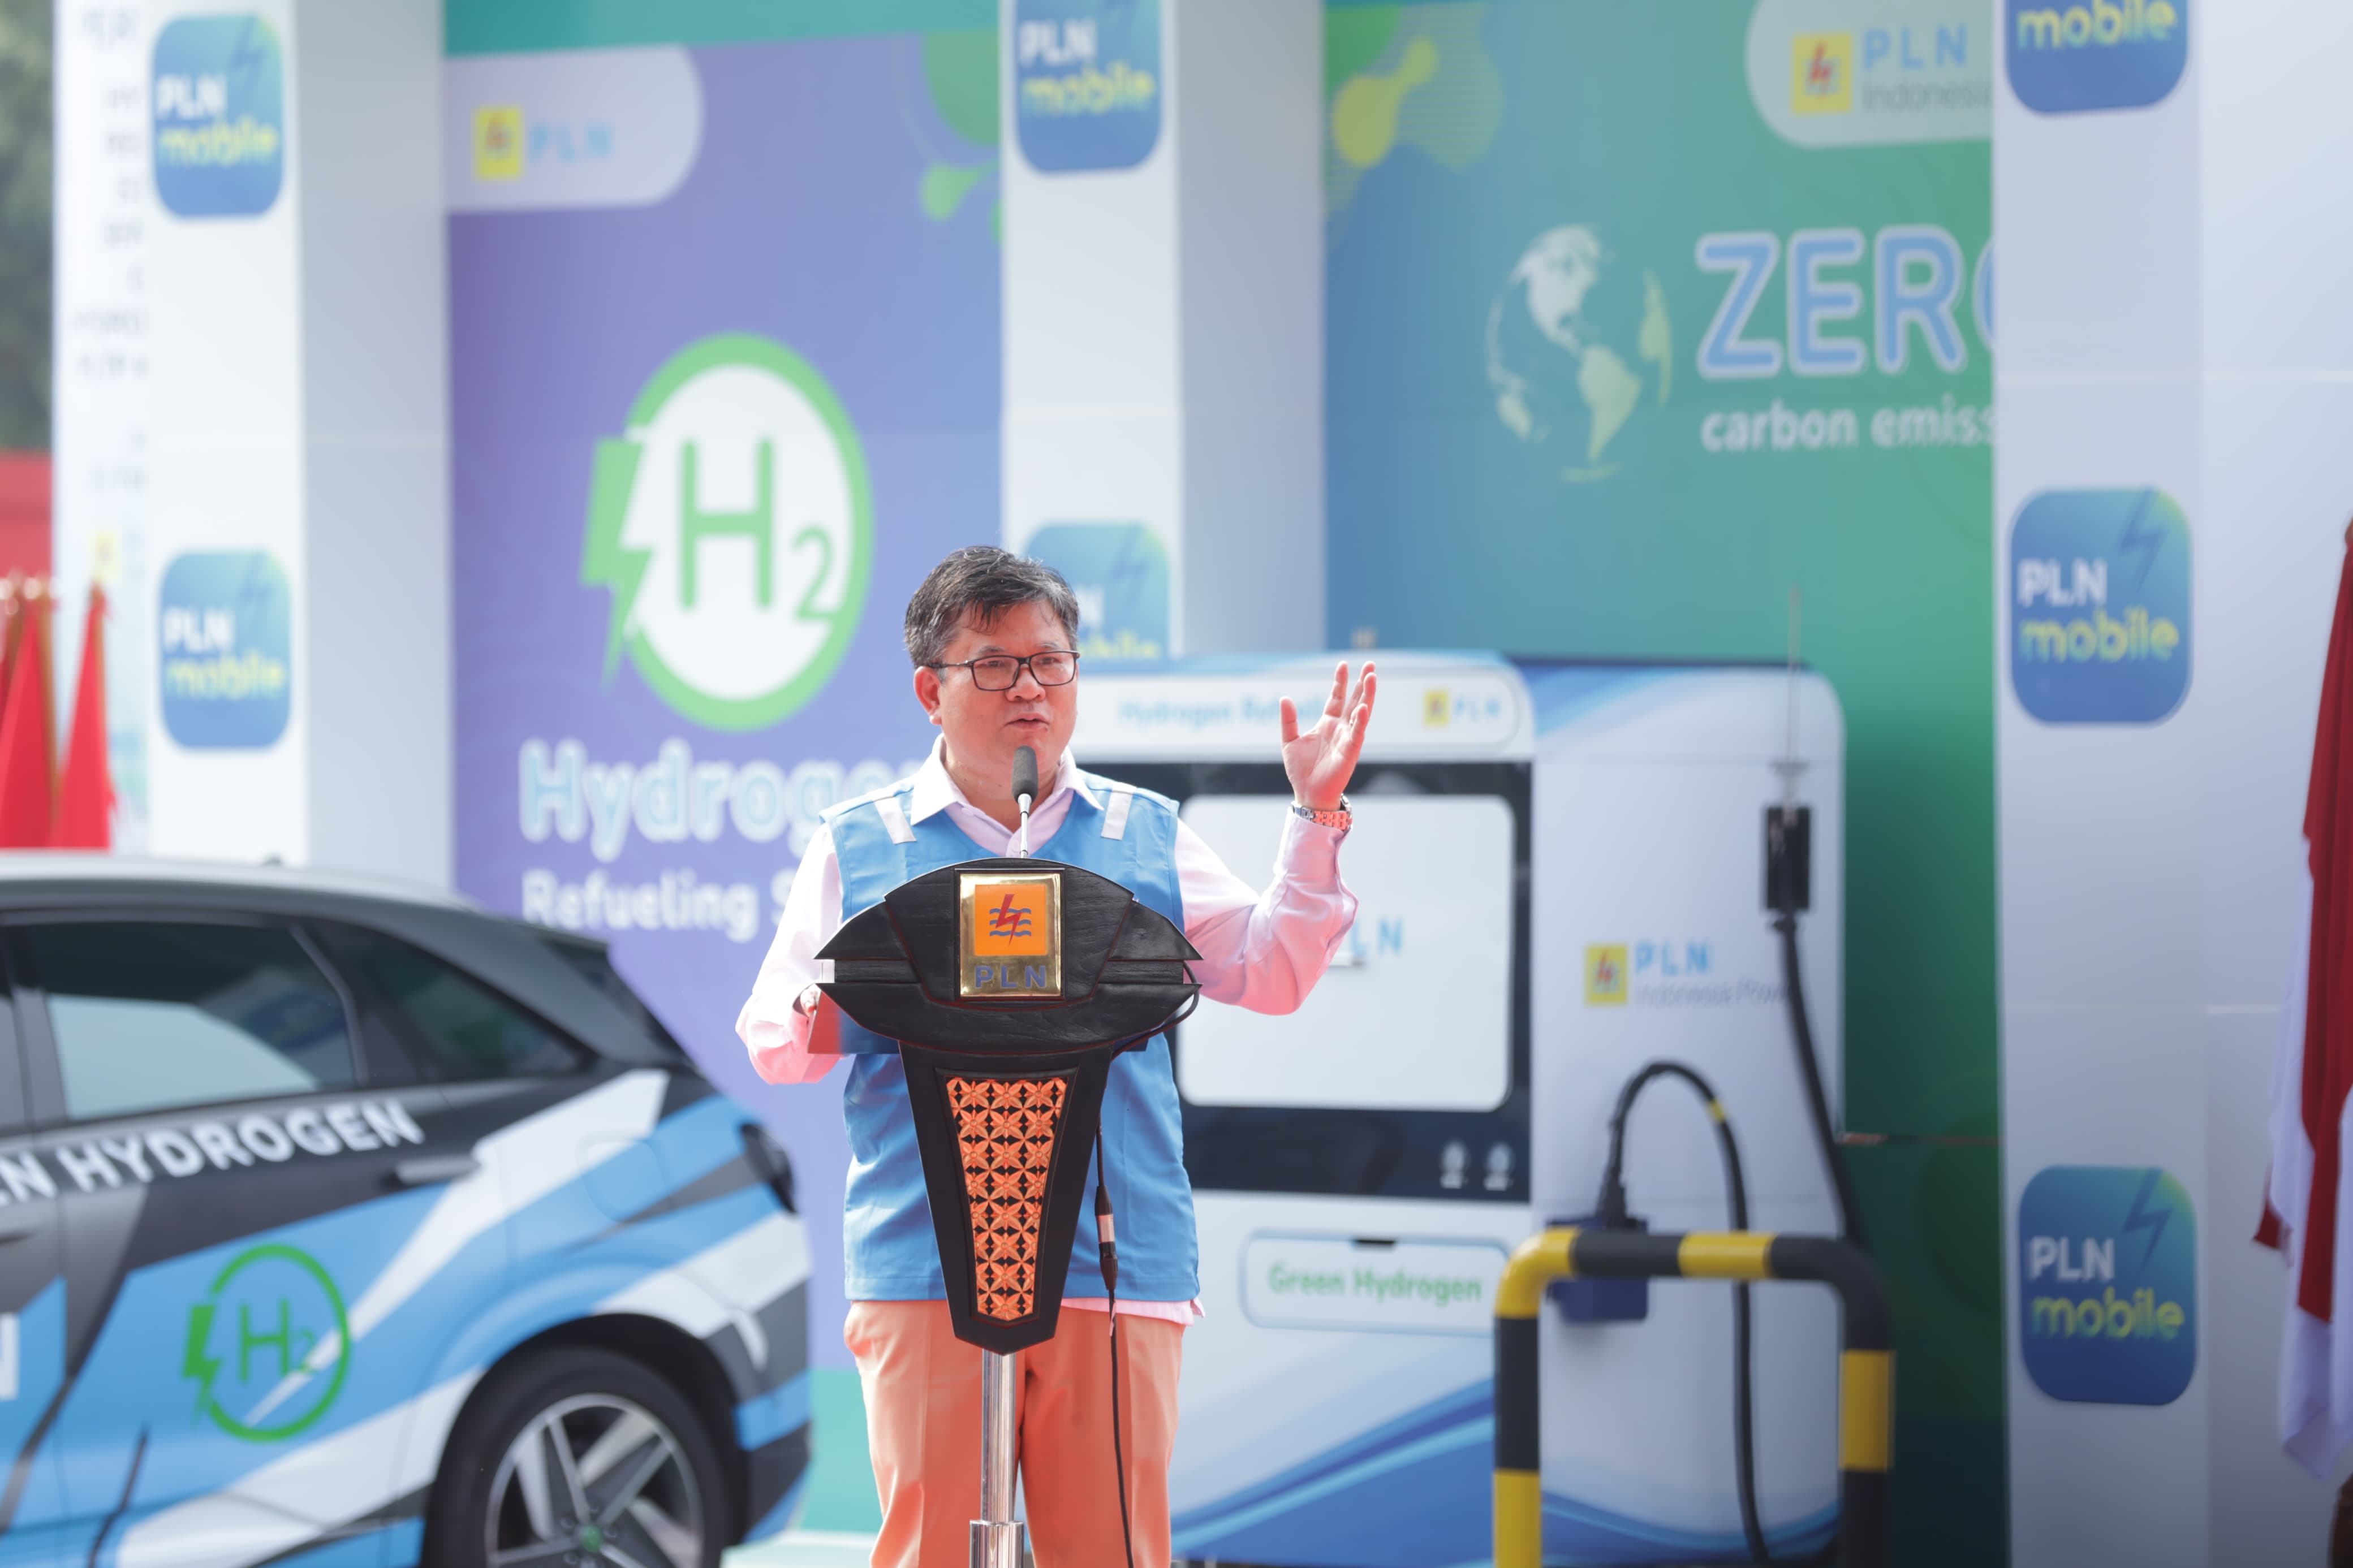 Plt Direktur Jenderal EBTKE Kementerian ESDM Jisman P. Hutajulu saat menyampaikan sambutan dalam acara peresmian _Hydrogen Refueling Station_ pertama di Indonesia milik PLN yang berlokasi di Senayan, Jakarta pada Rabu (21/2).